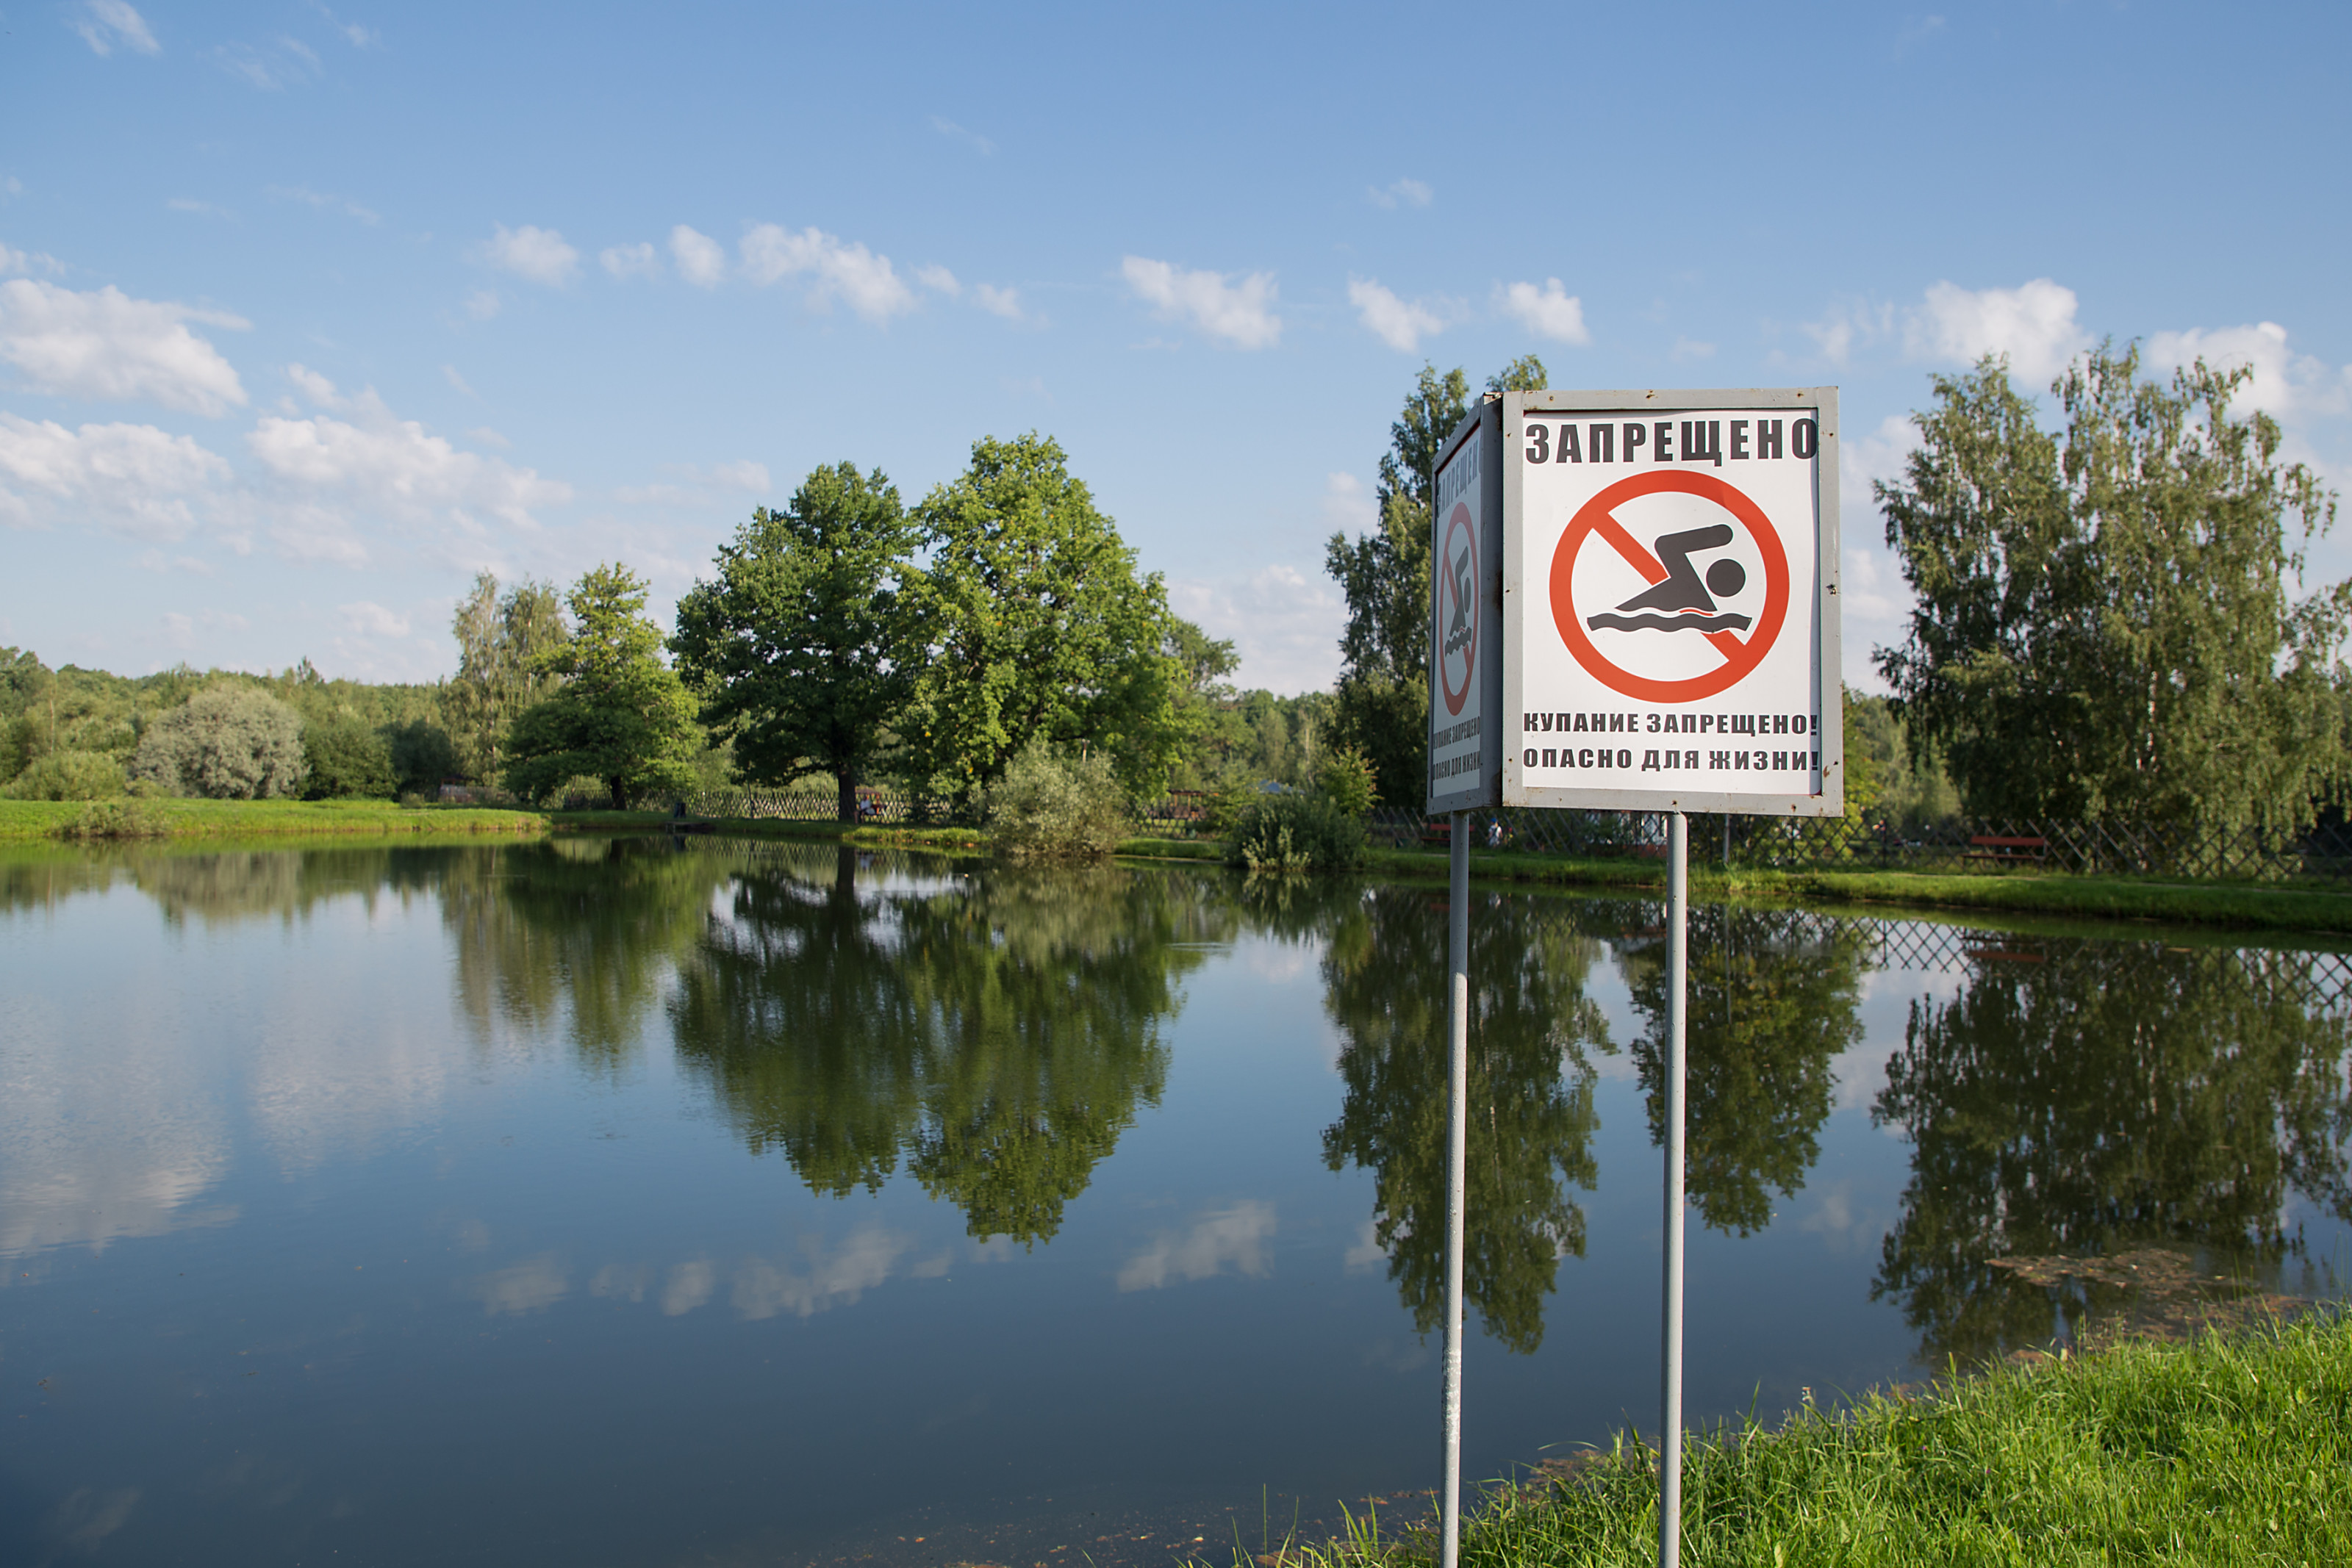 Купаться нельзя река. Купаться запрещено. Запрещено купаться в пруду. Купание запрещено табличка. Опасные водоемы.